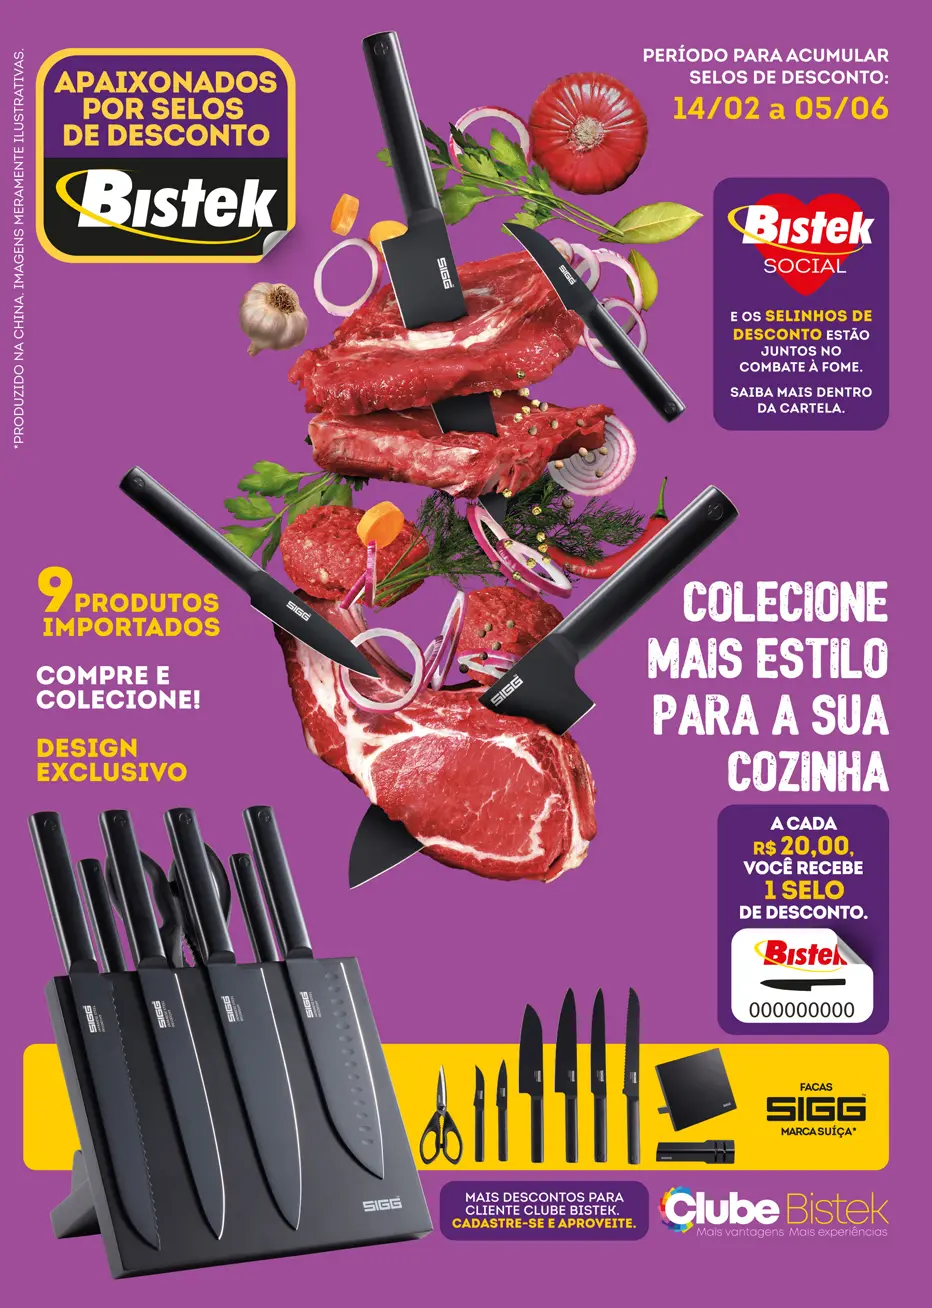 Bistek lança campanha inédita de selos de desconto que vai beneficiar 12 ONGs catarinenses e gaúchas